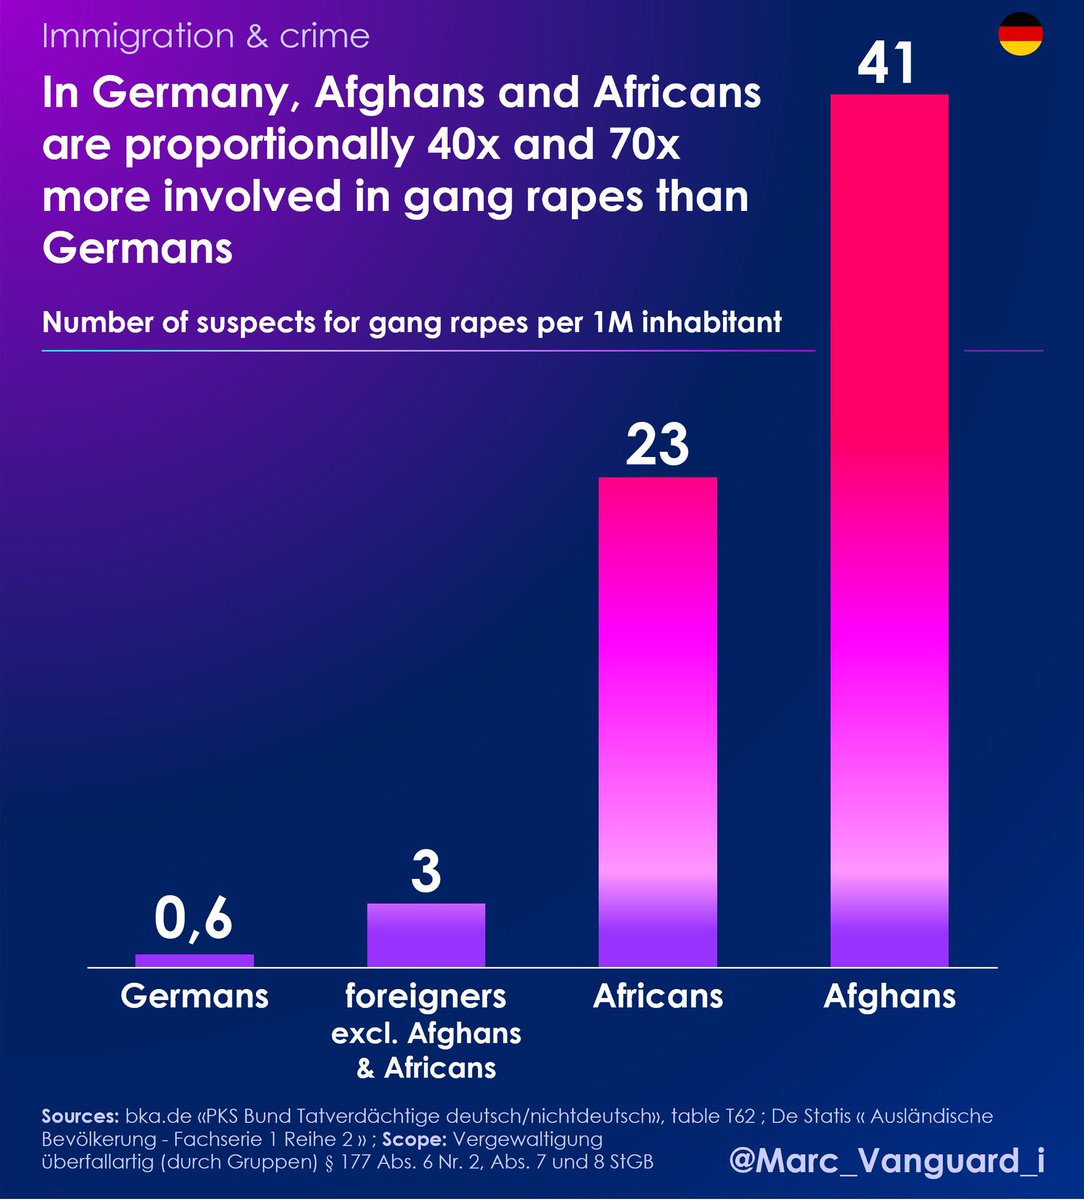 آمار تجاوزهای گروهی که افغانی‌ها تو آلمان مرتکب شدند رو در قیاس با خود آلمانیها ببینید. تازه تعداد افغانیهای آلمان اصلا قابل قیاس با جمعیت عظیم افغانیهای ایران نیست. خودتون حالا وضعیت ایران رو حدس بزنید که رژیم آمارش رو مخفی میکنه.